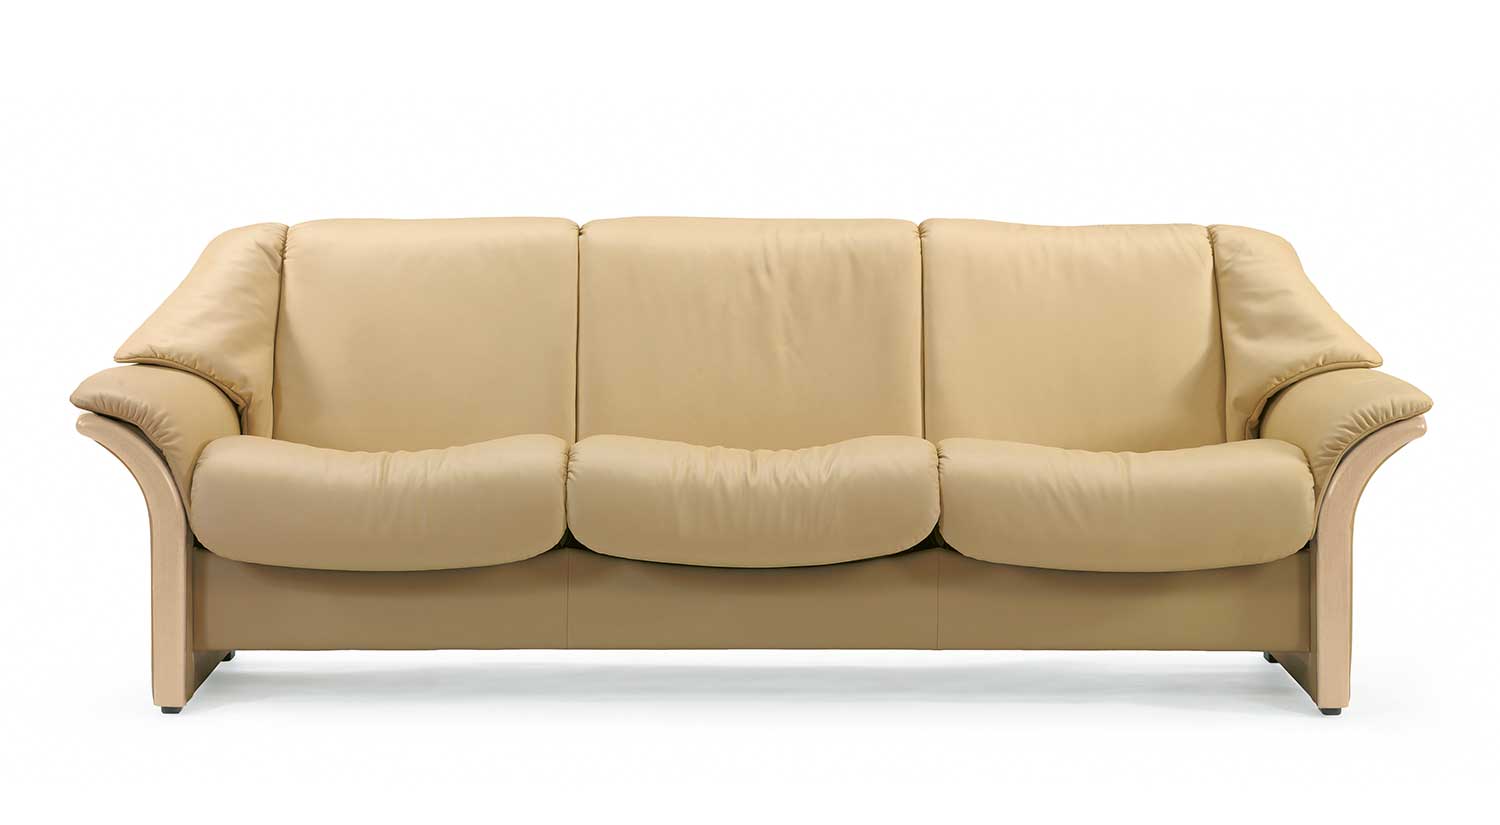 Circle Furniture Eldorado Stressless Lowback Sofa Leather